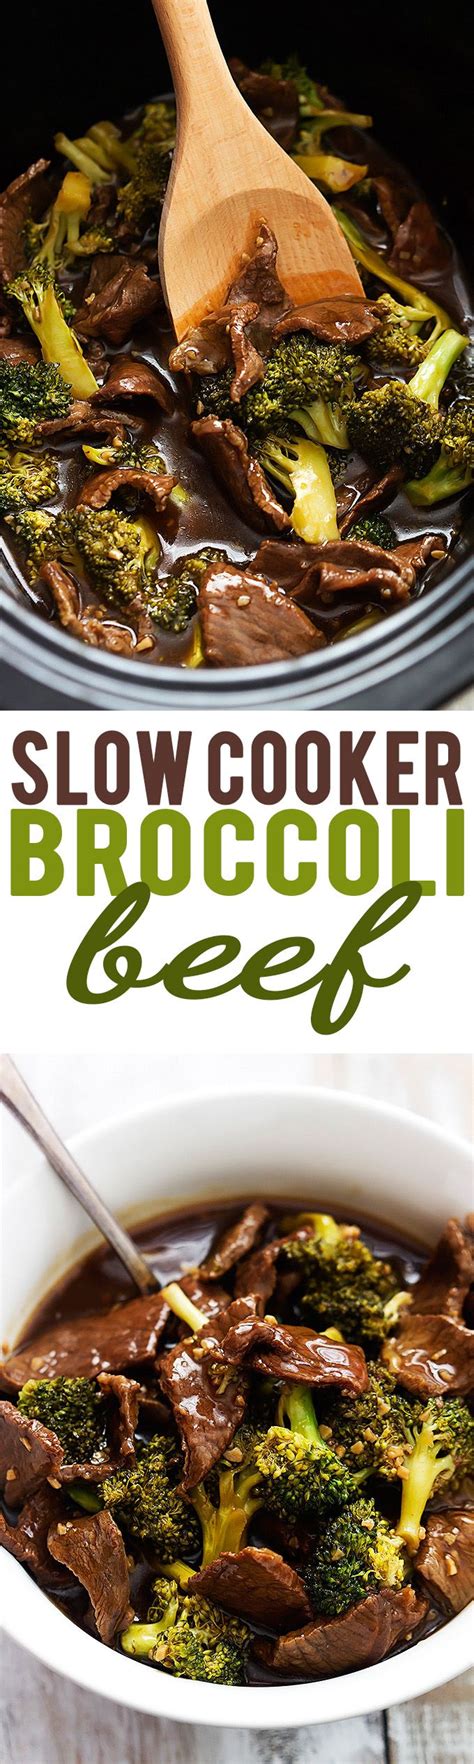 Slow Cooker Broccoli Beef Creme De La Crumb Recipes Slow Cooker